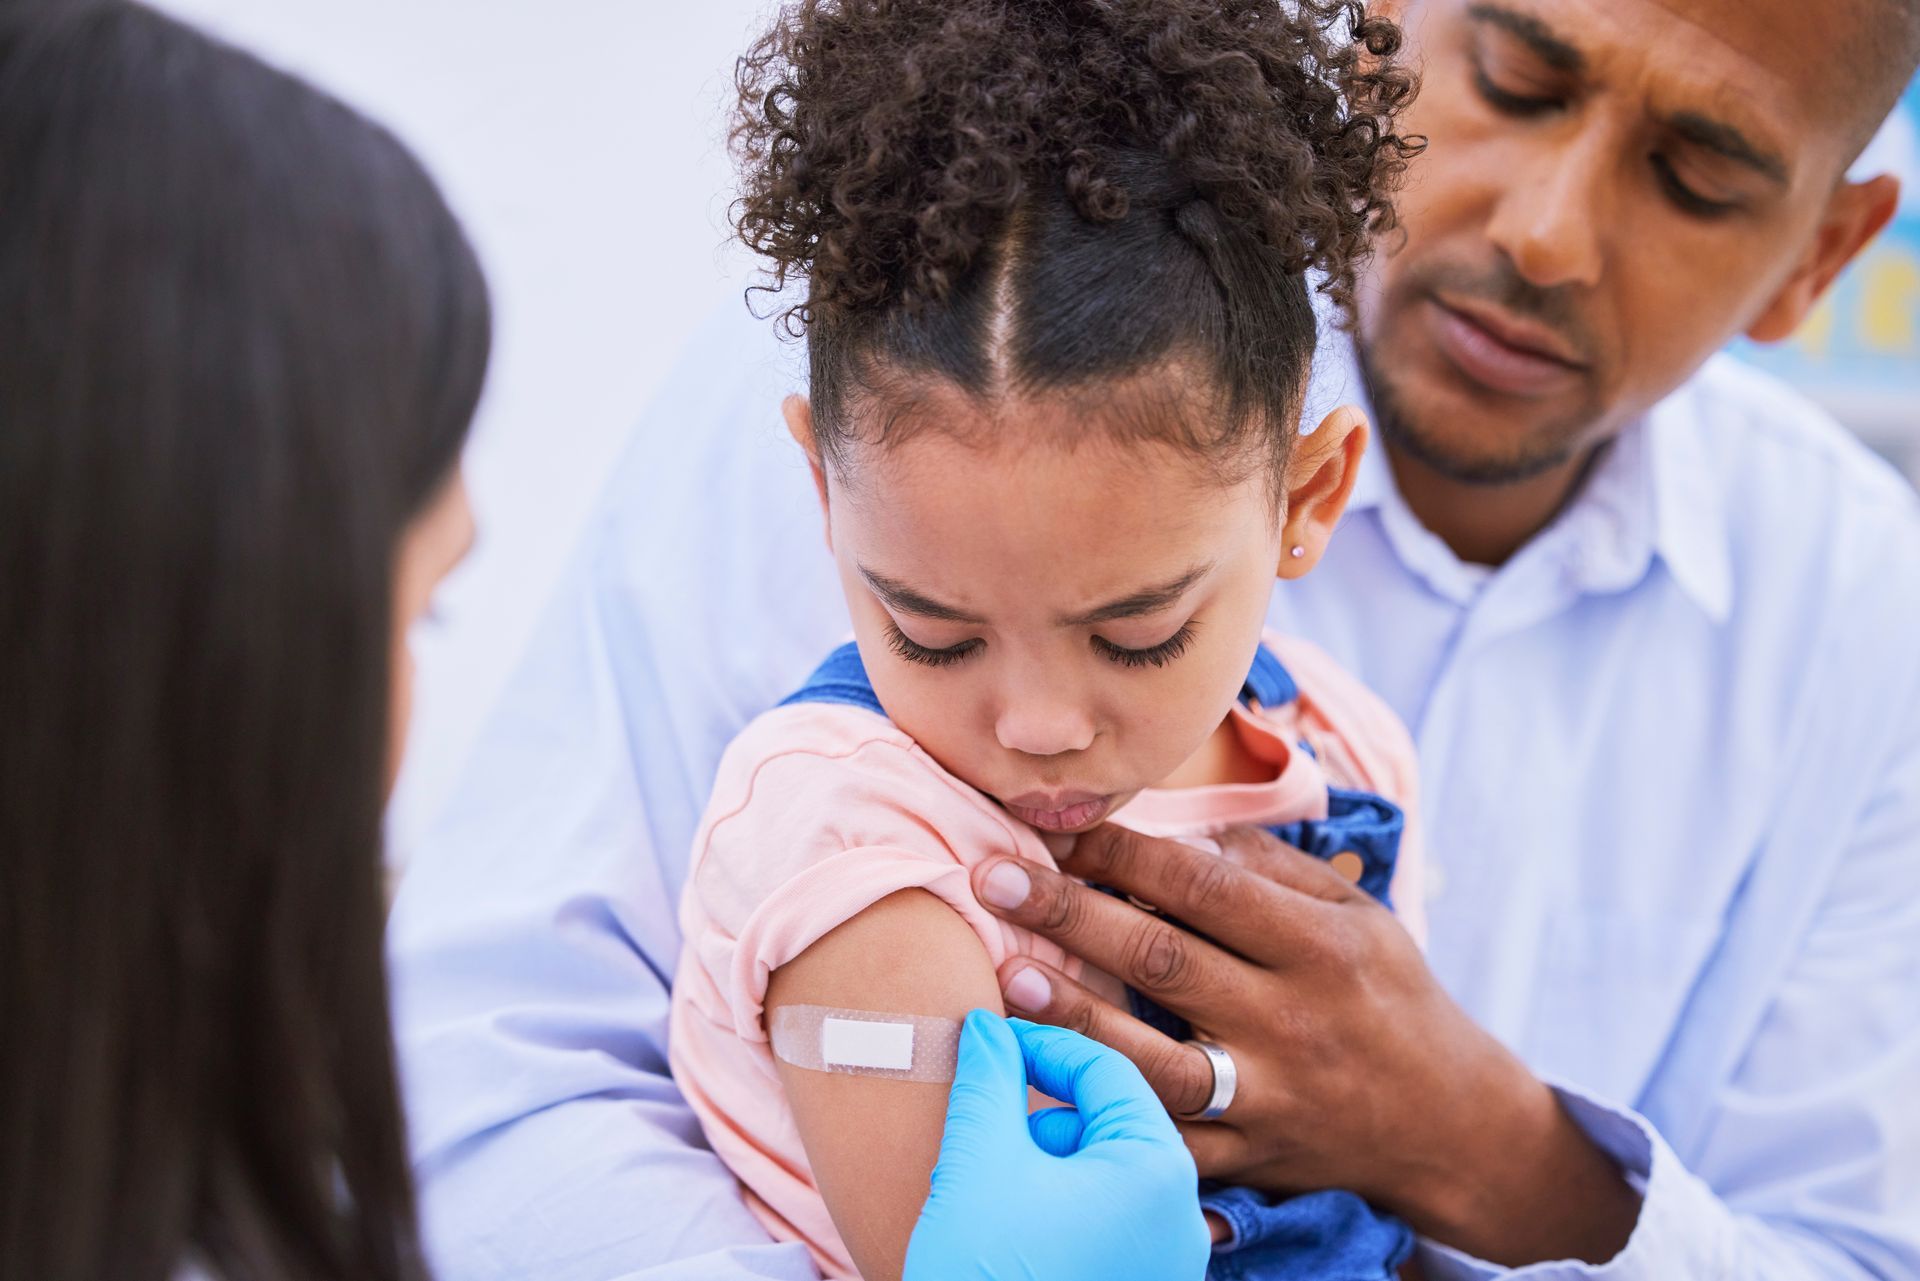 Children's Health Priority: Immunization Awareness